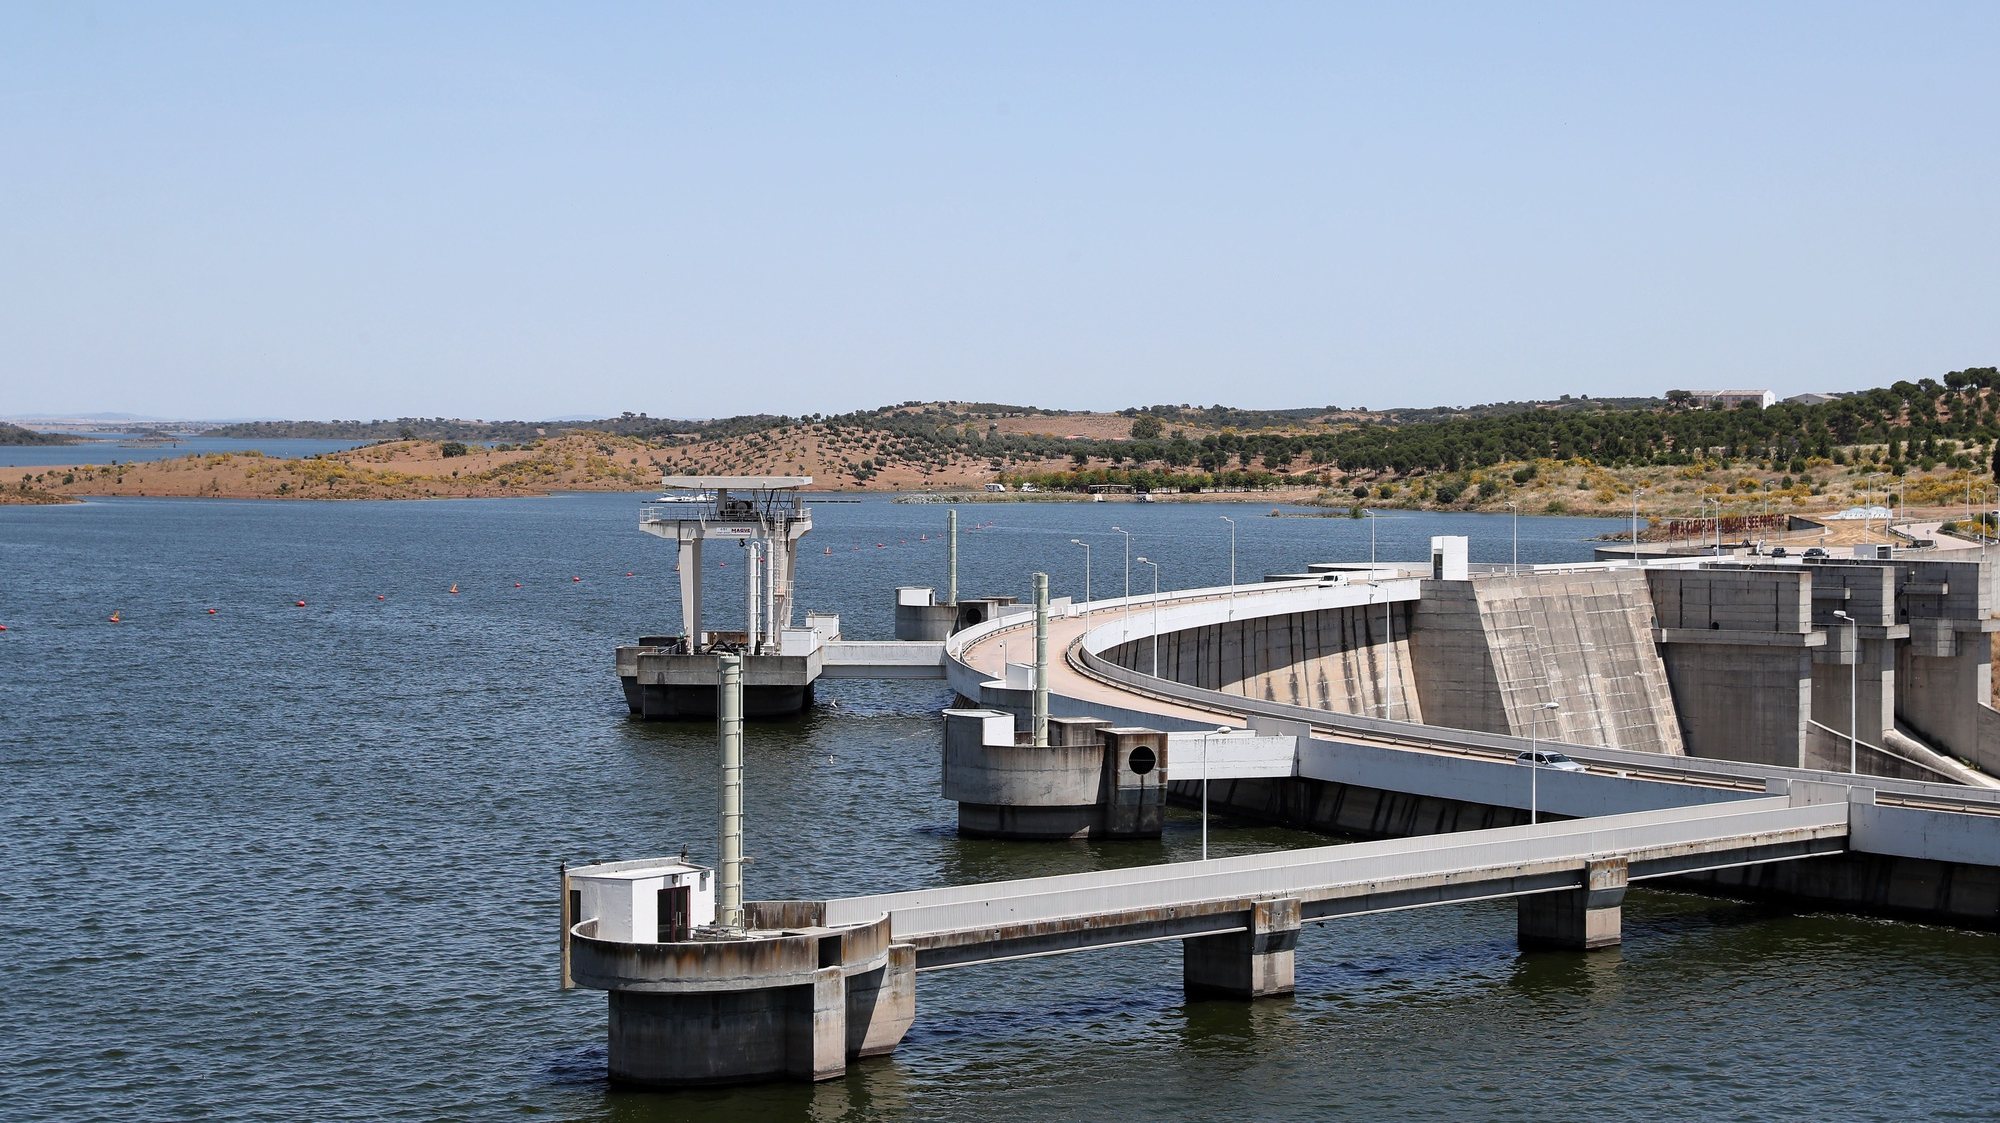 A albufeira da barragem de Alqueva, praticamente no seu limite máximo, hoje à cota de 150 metros (152 metros é a capacidade máxima), com 3701.29 hm3 (hectómetros cúbicos) de água. A albufeira do Alqueva atingiu, pela primeira vez, a capacidade máxima em 12 de janeiro de 2010, quase oito anos após ter começado a encher (a 08 de fevereiro de 2002), quando se fecharam as comportas da barragem. Portel, 21 de maio de 2021. NUNO VEIGA/LUSA